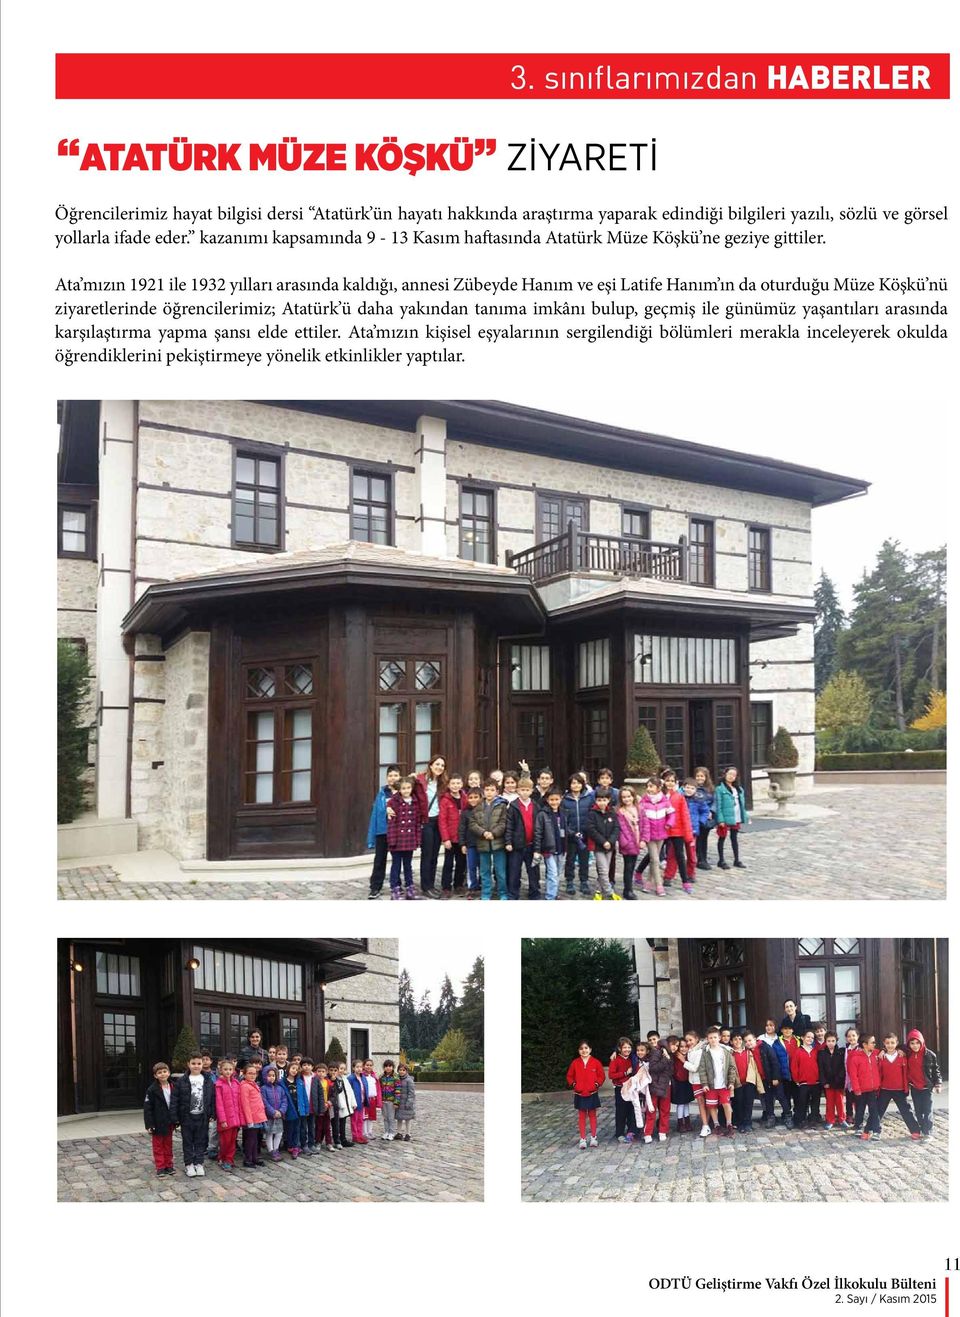 kazanımı kapsamında 9-13 Kasım haftasında Atatürk Müze Köşkü ne geziye gittiler.